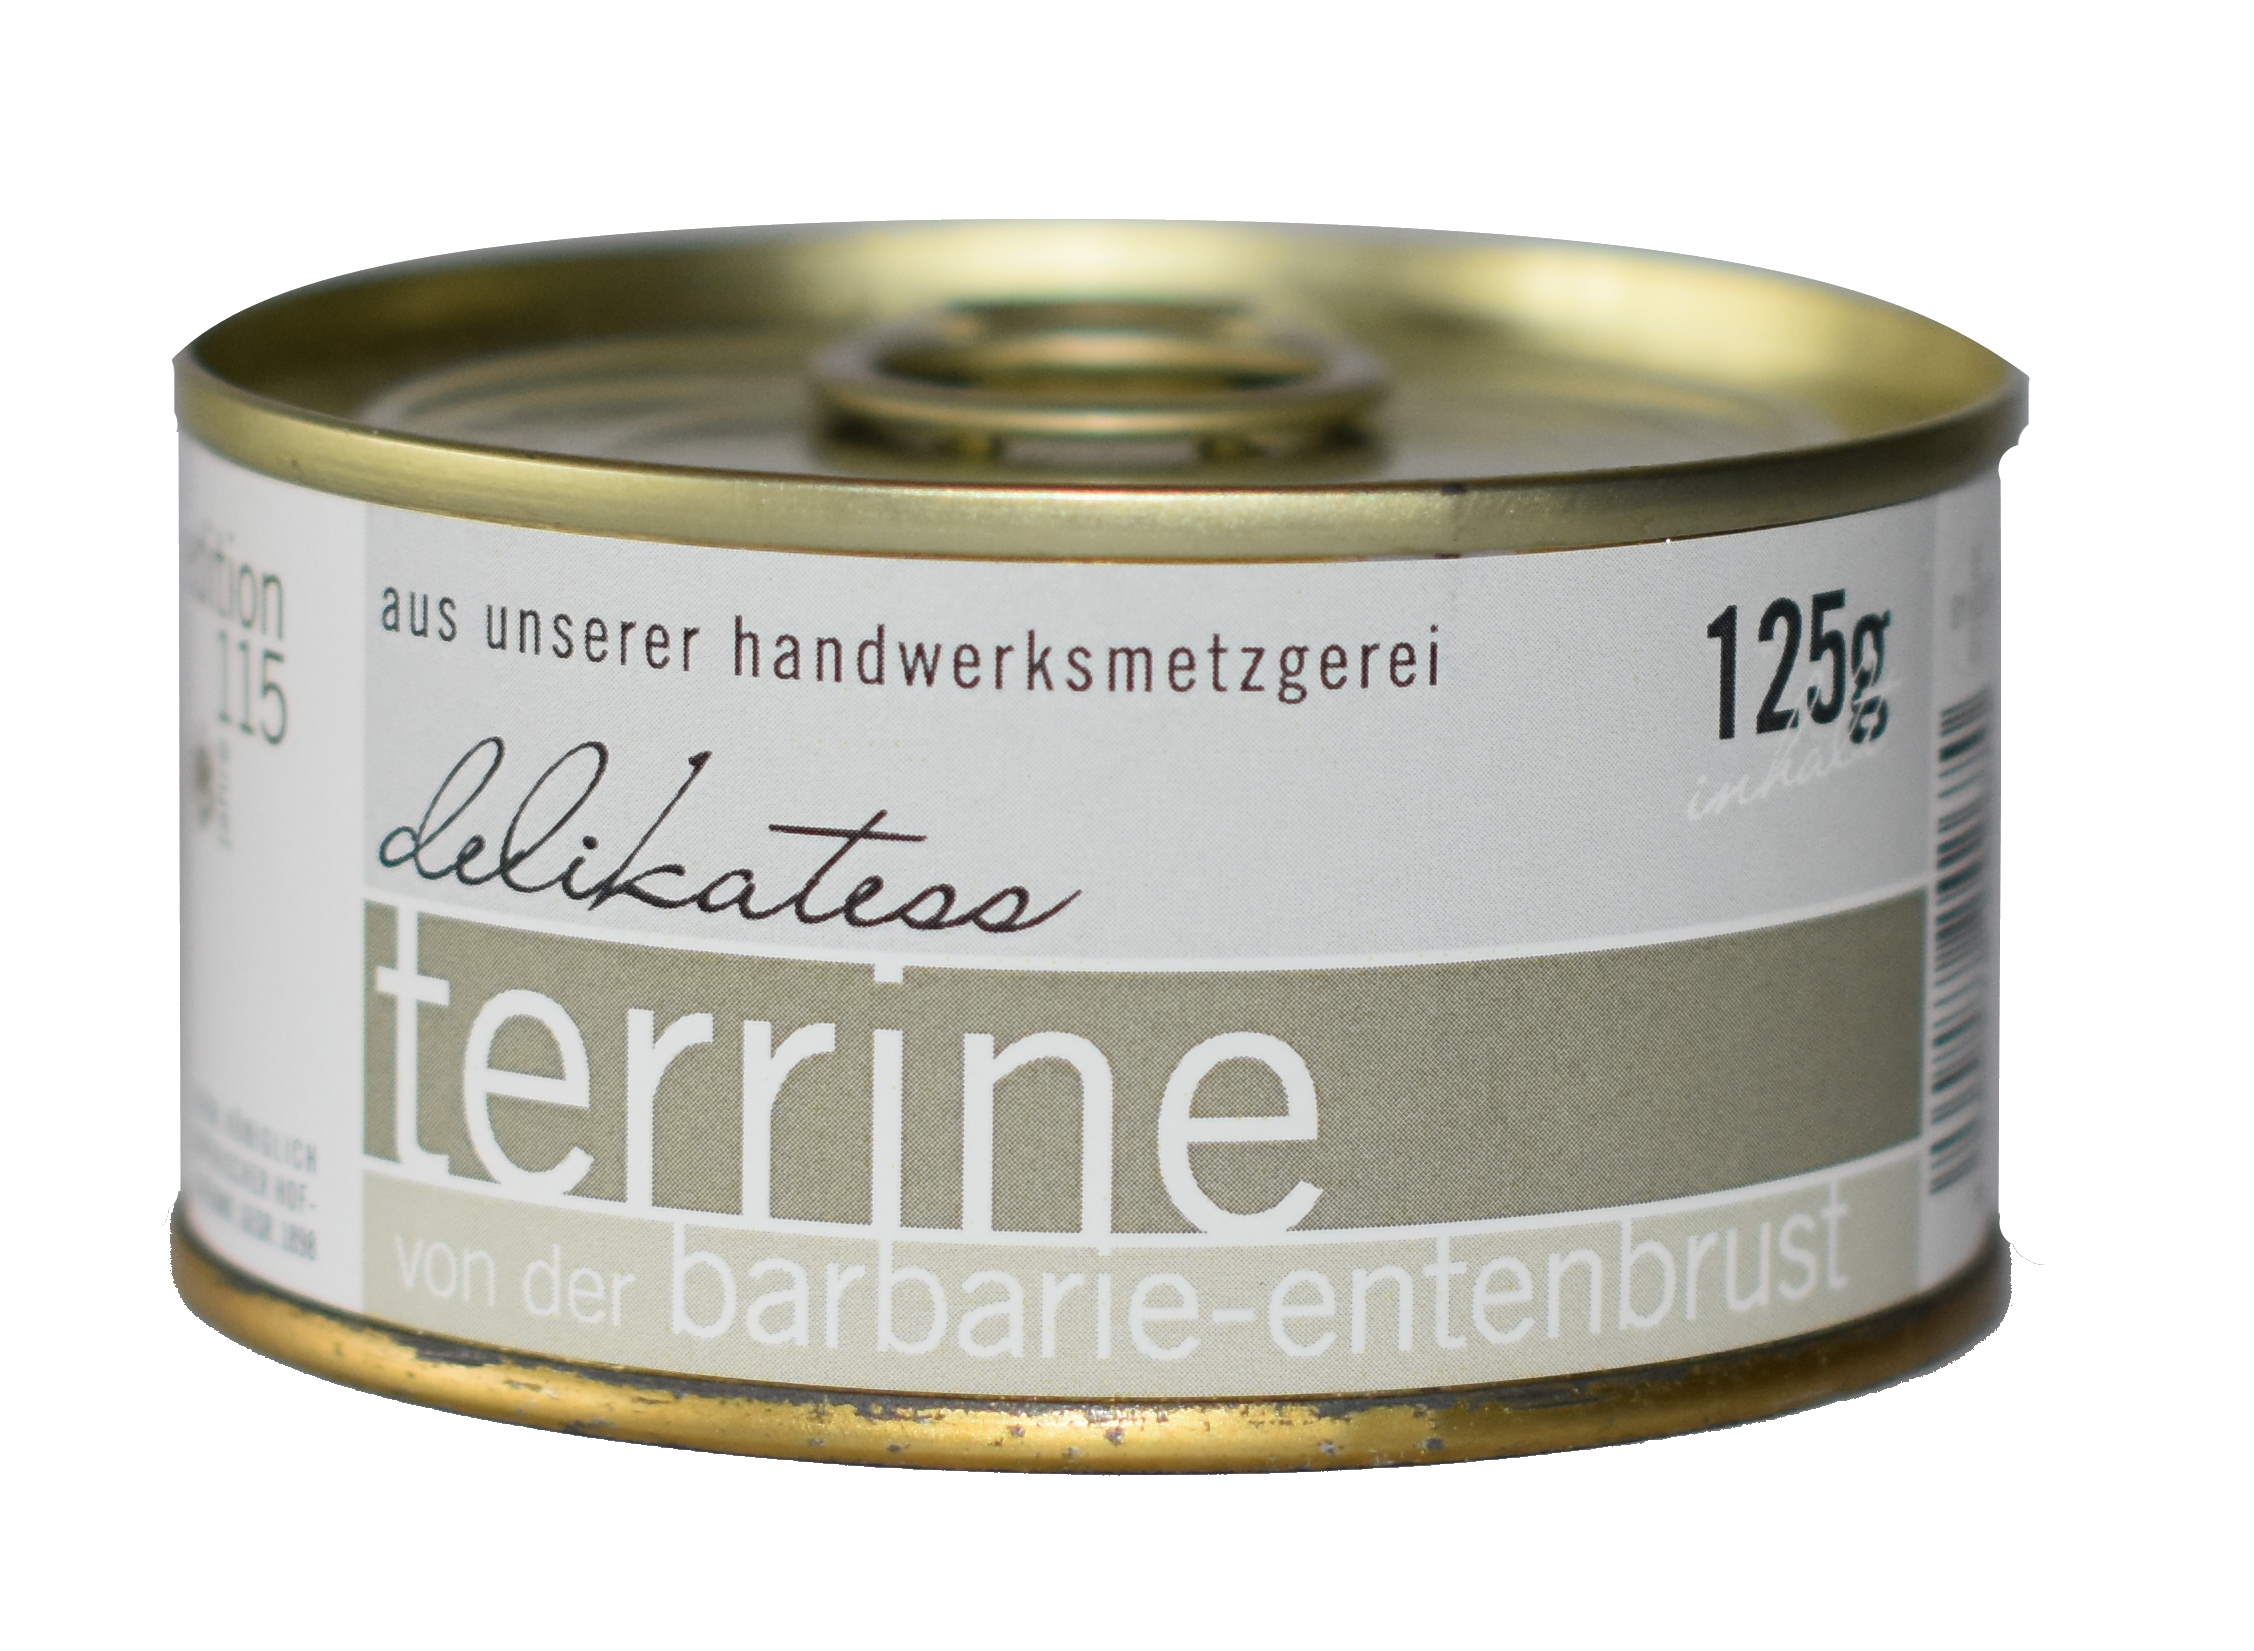 Delikatess Terrine von der Barbarie-Entenbrust, Faber Feinkost 0,125 kg